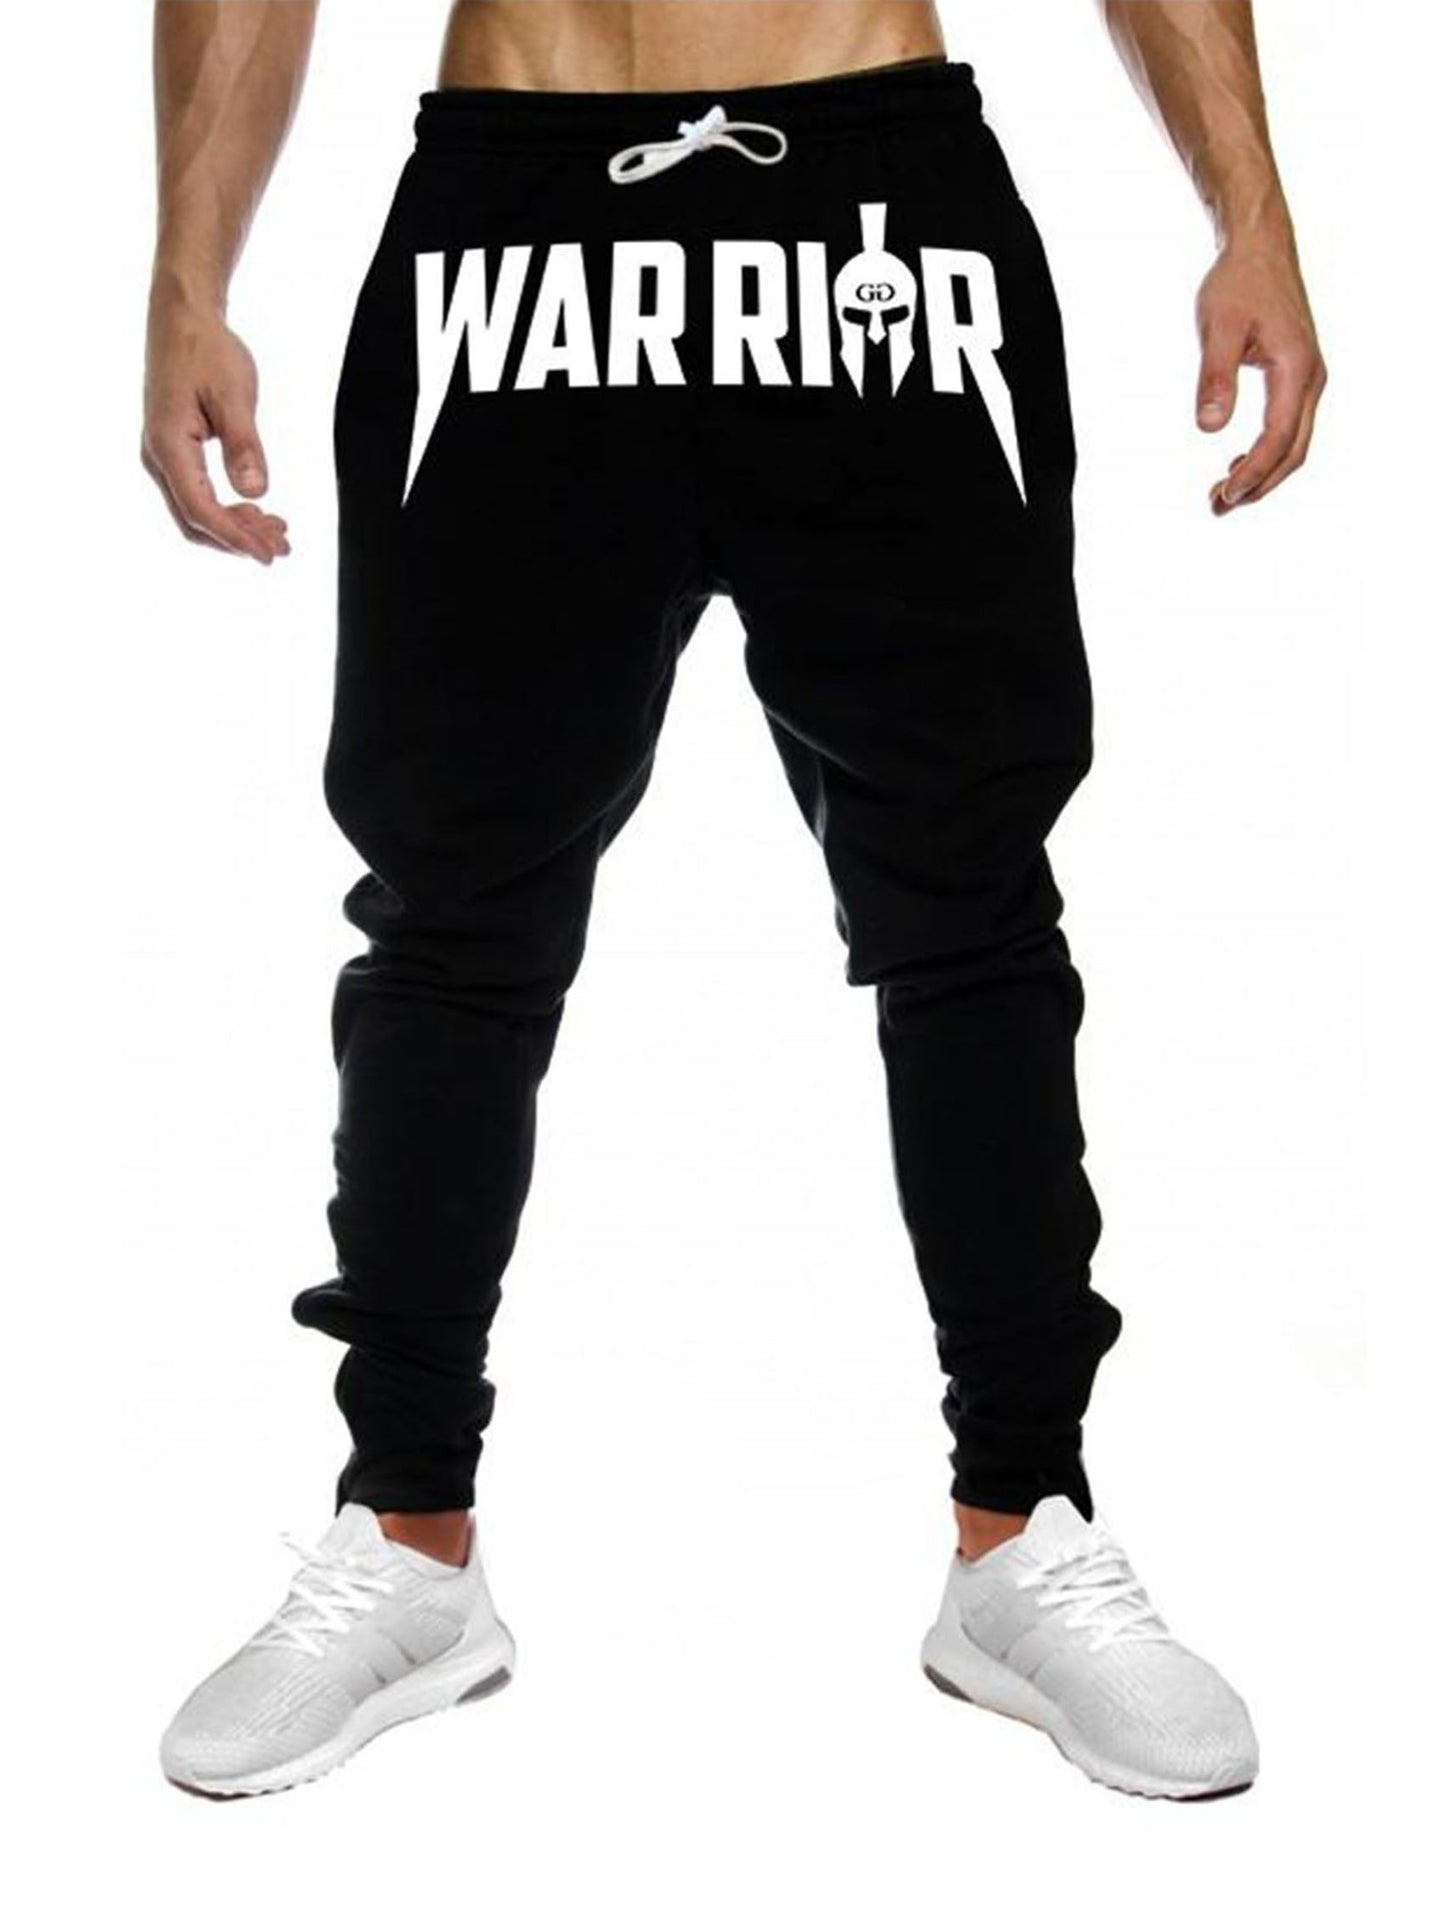 Schwarze Trainer Pants von Gym Generation mit weißem "Warrior" Aufdruck, getragen von einem sportlichen Mann mit Sneakers.